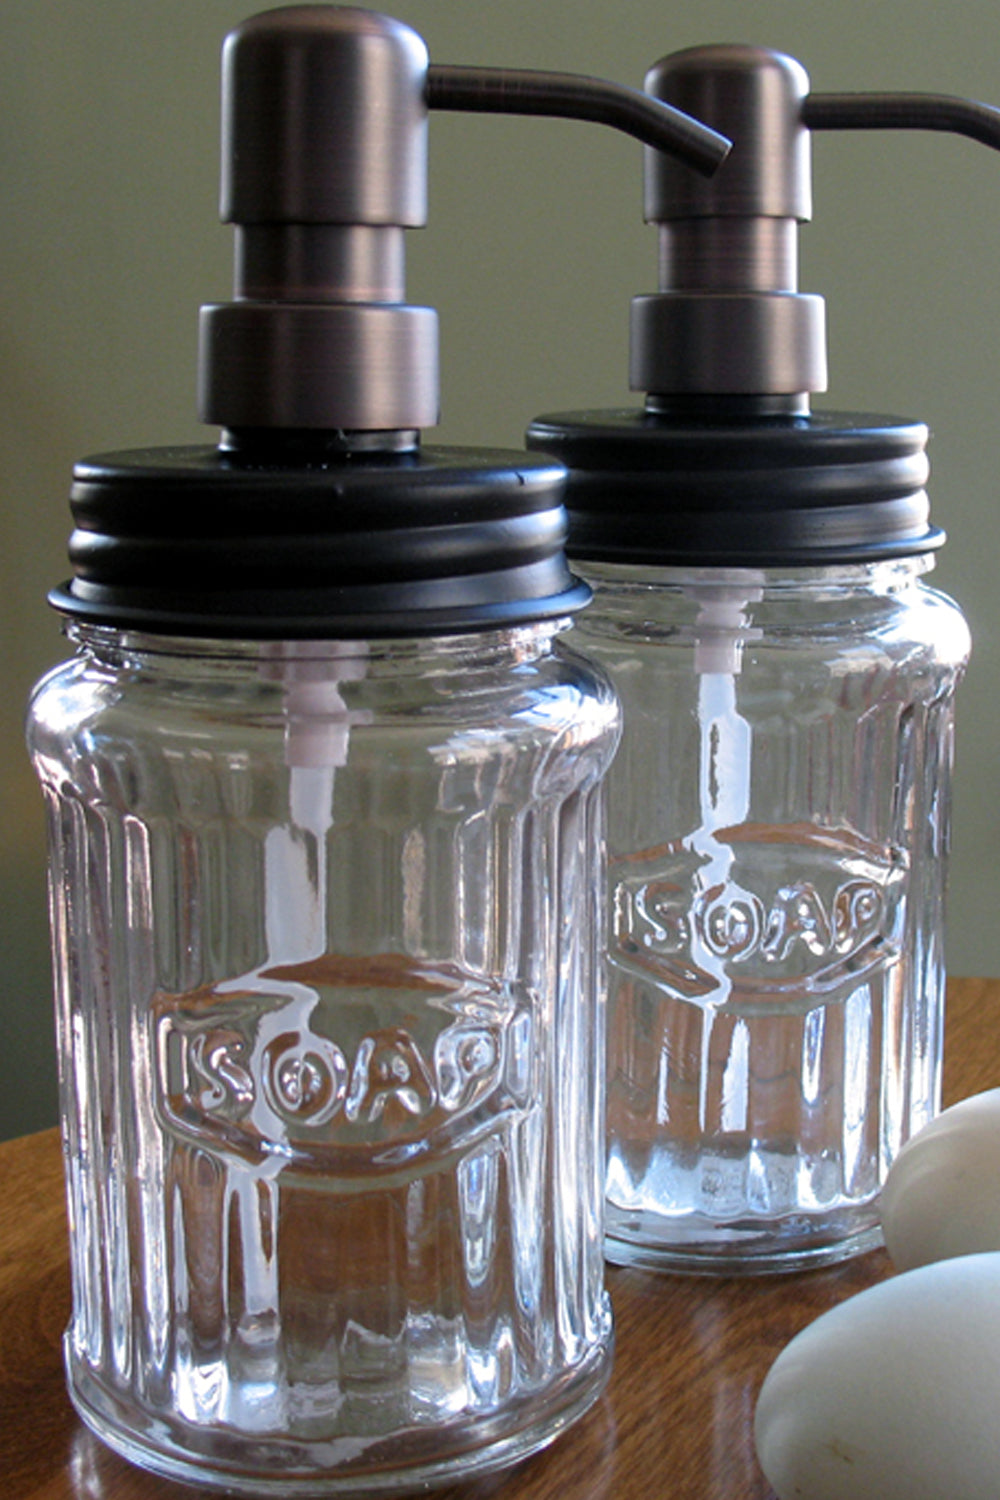 hoosier jar soap dispenser, bronze pump